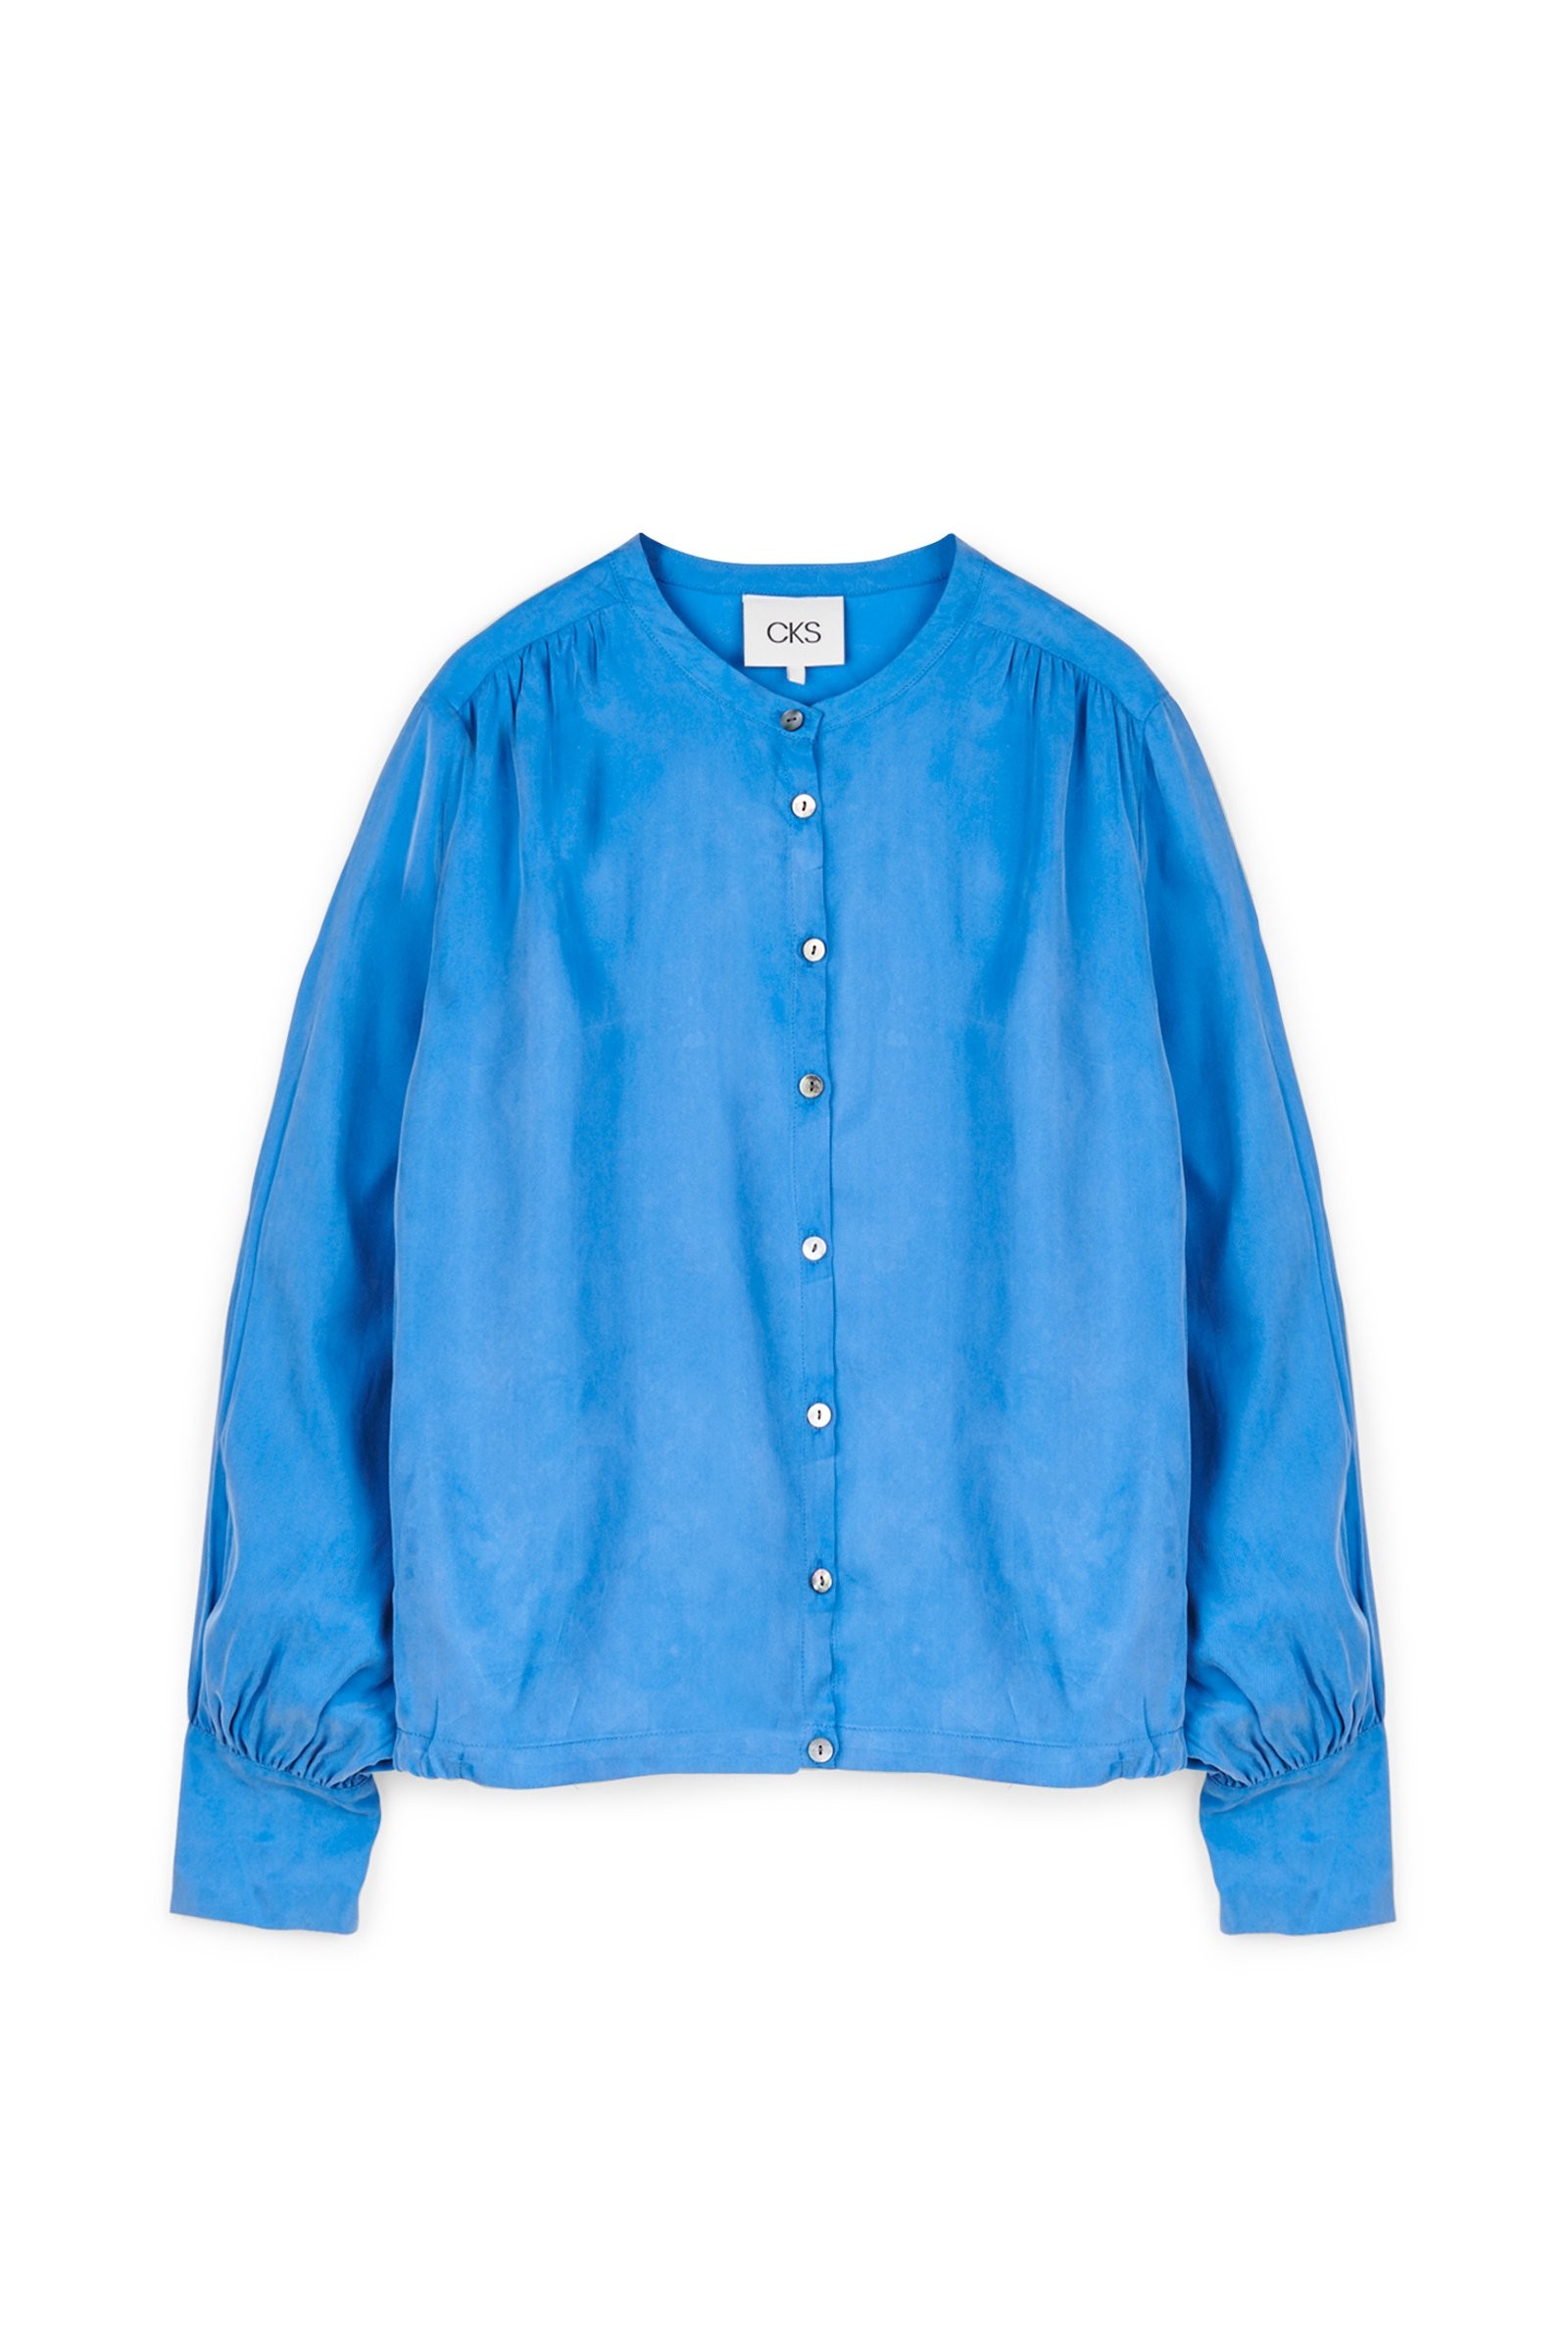 CKS Dames - WINONA - blouse long sleeves - blue